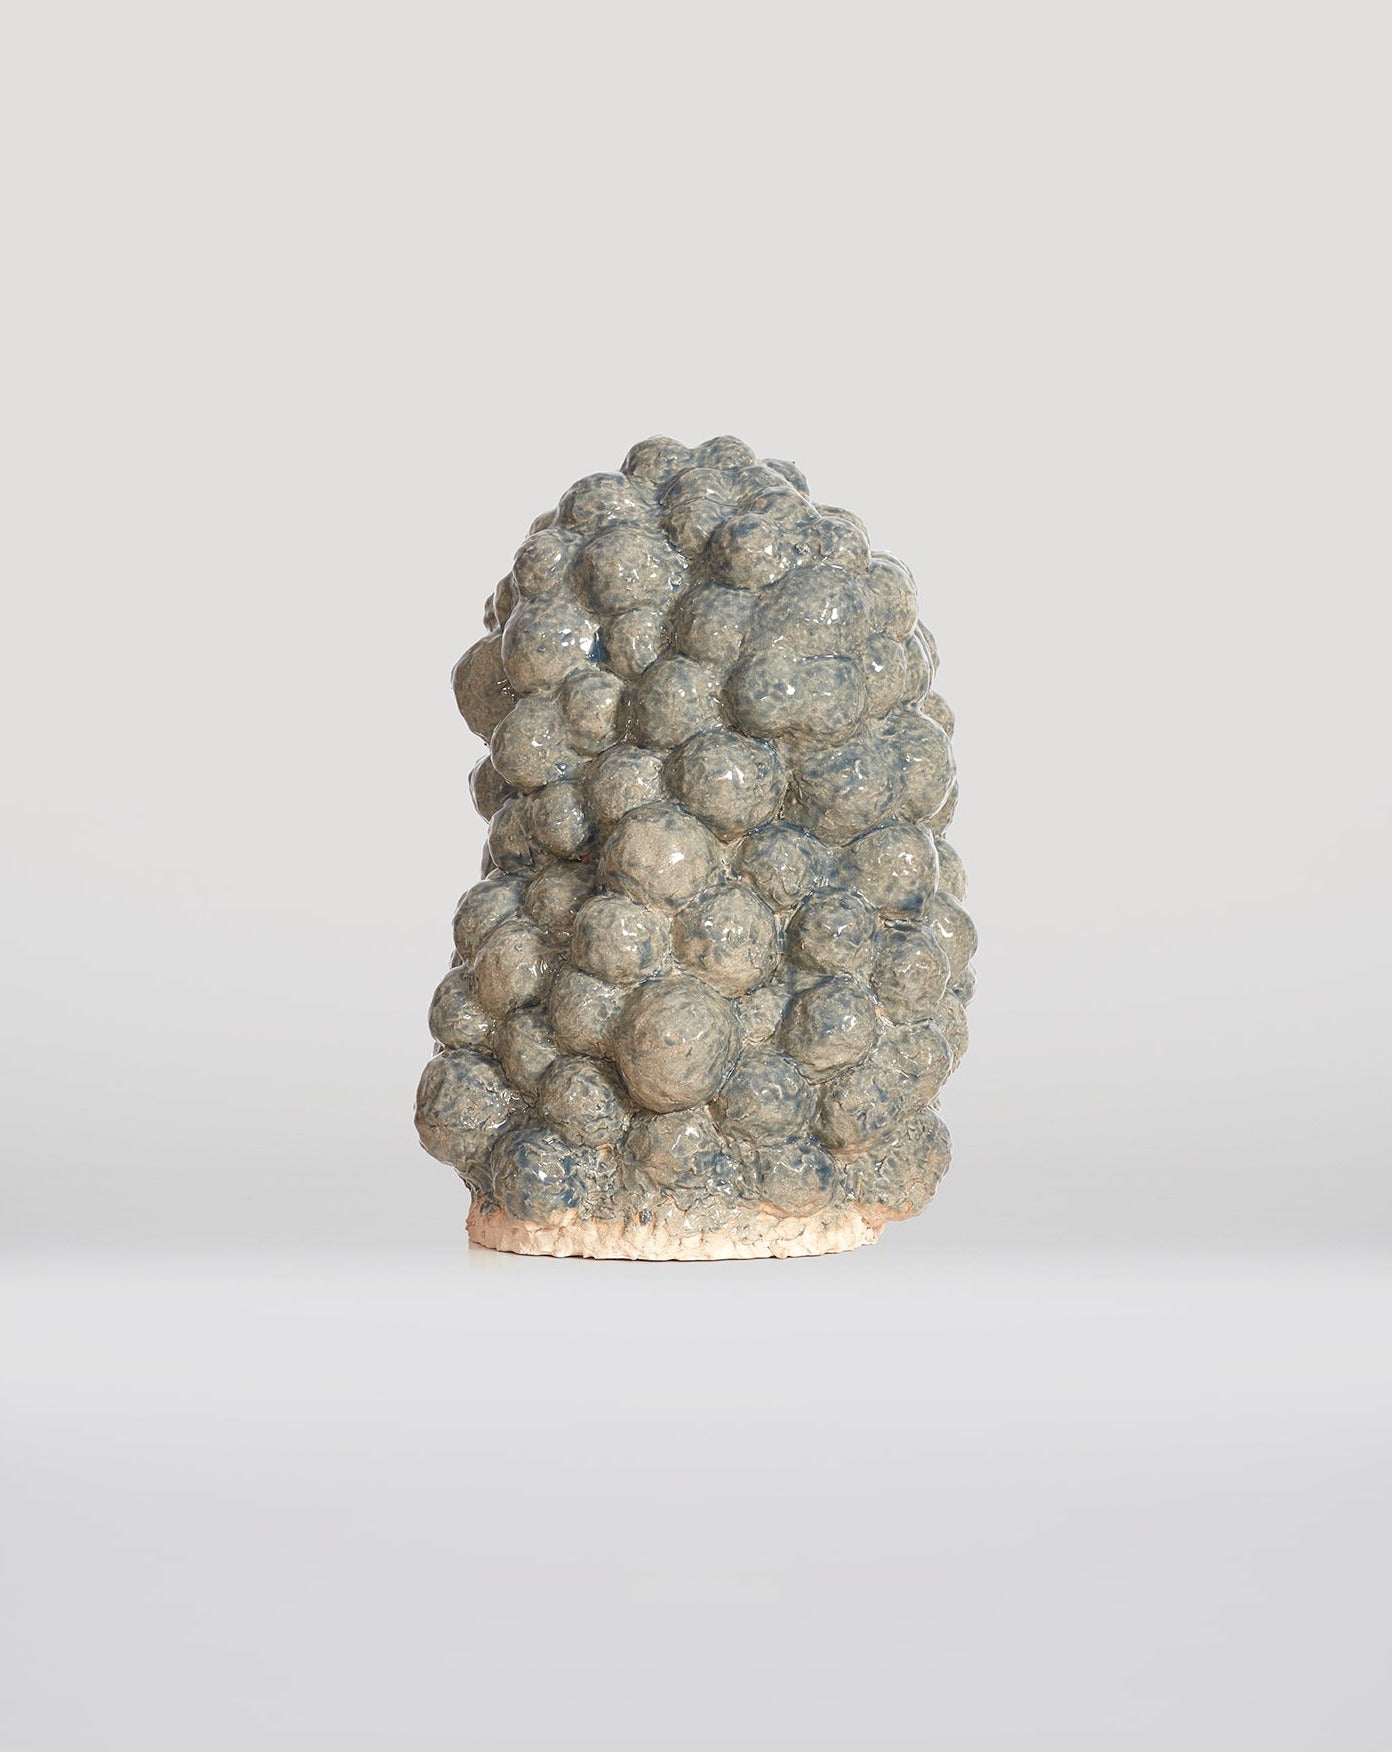 Untitled 12 (Ceramic Sculpture) - kombi